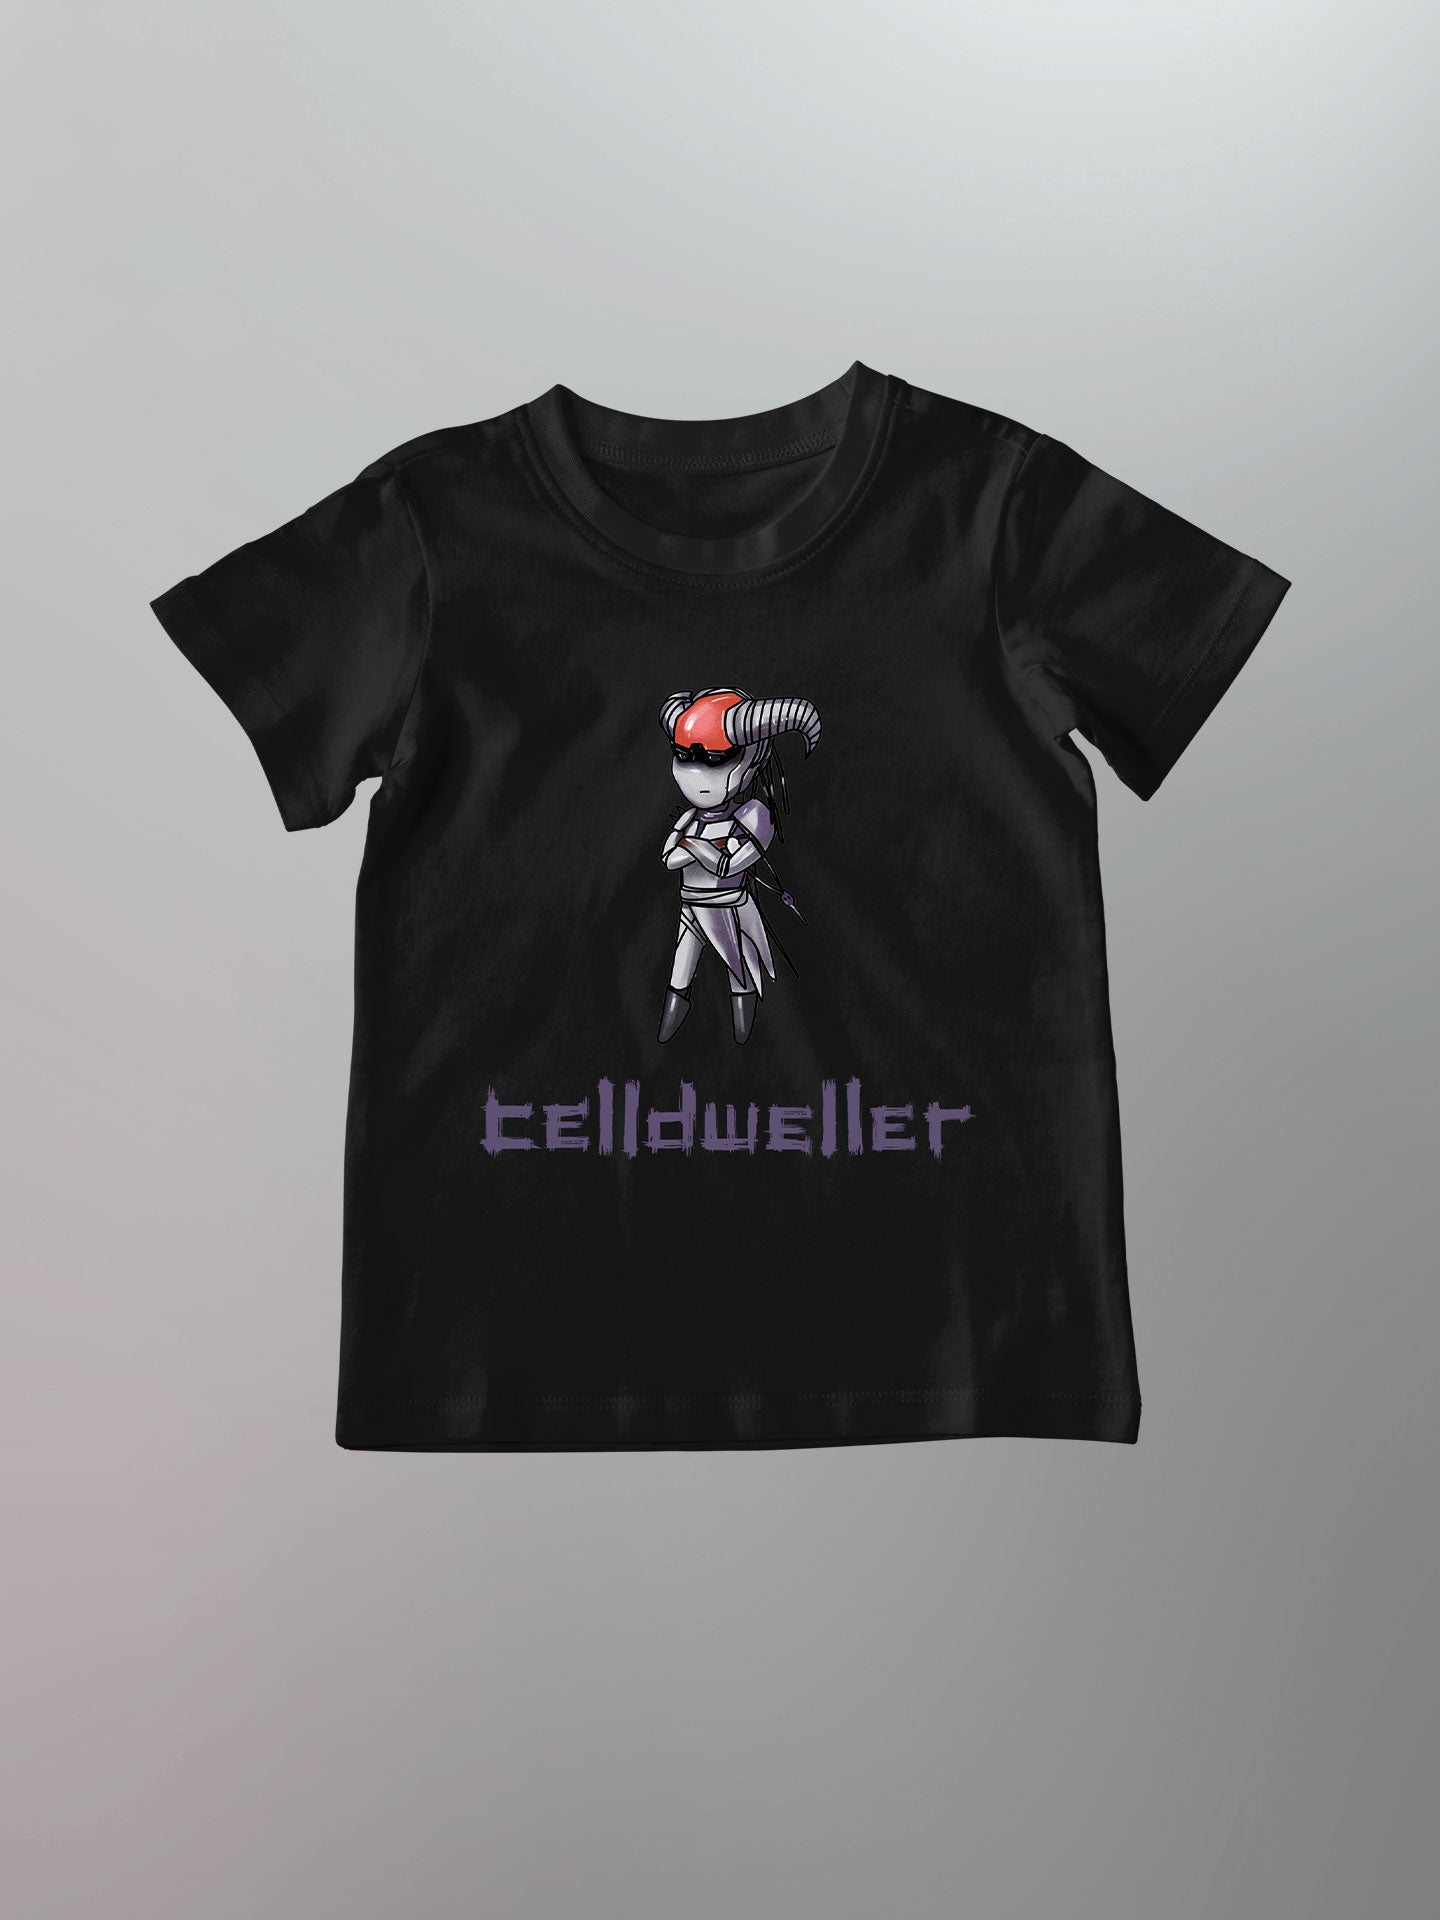 Celldweller - Gatekeeper Chibi Shirt [Toddler/Youth]